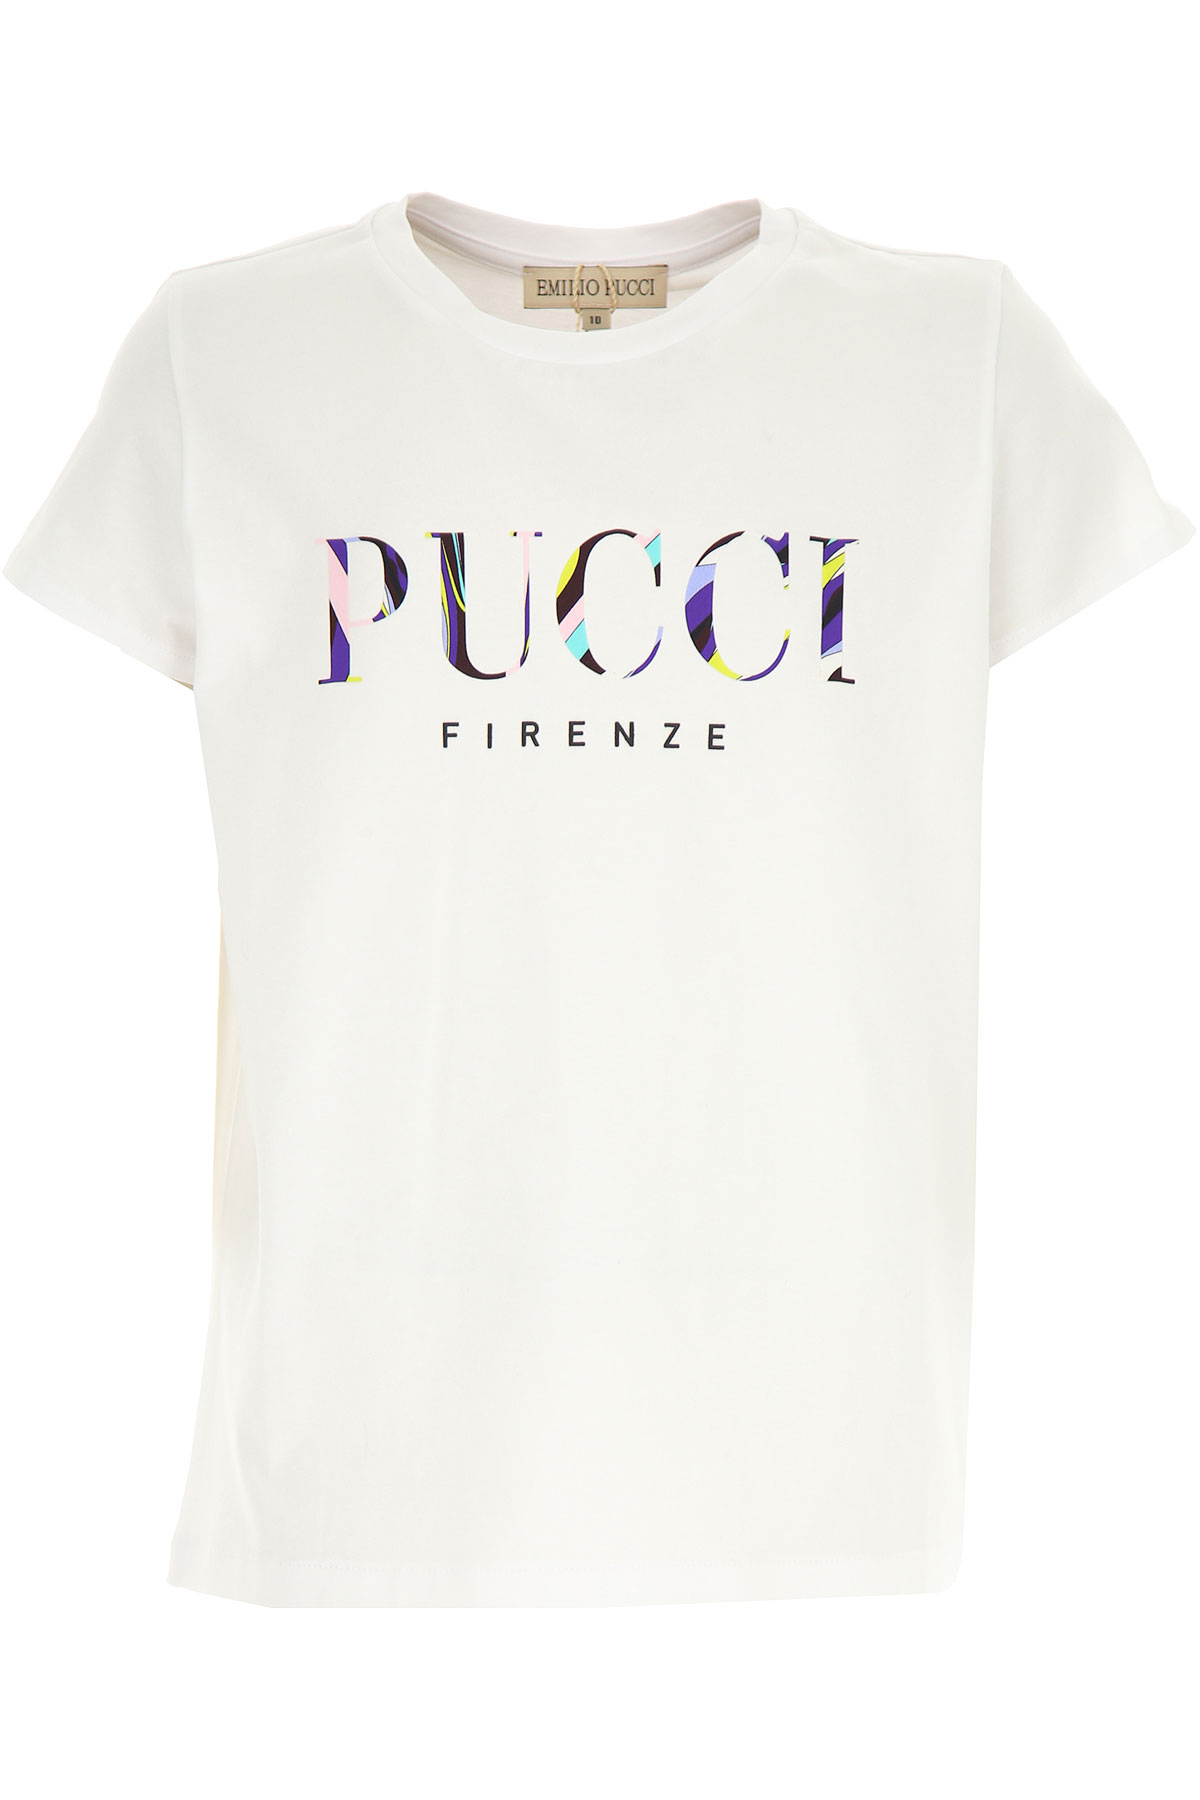 Emilio Pucci Kinder T-Shirt für Mädchen Günstig im Sale, Weiss, Baumwolle, 2017, 10Y 12Y 14Y